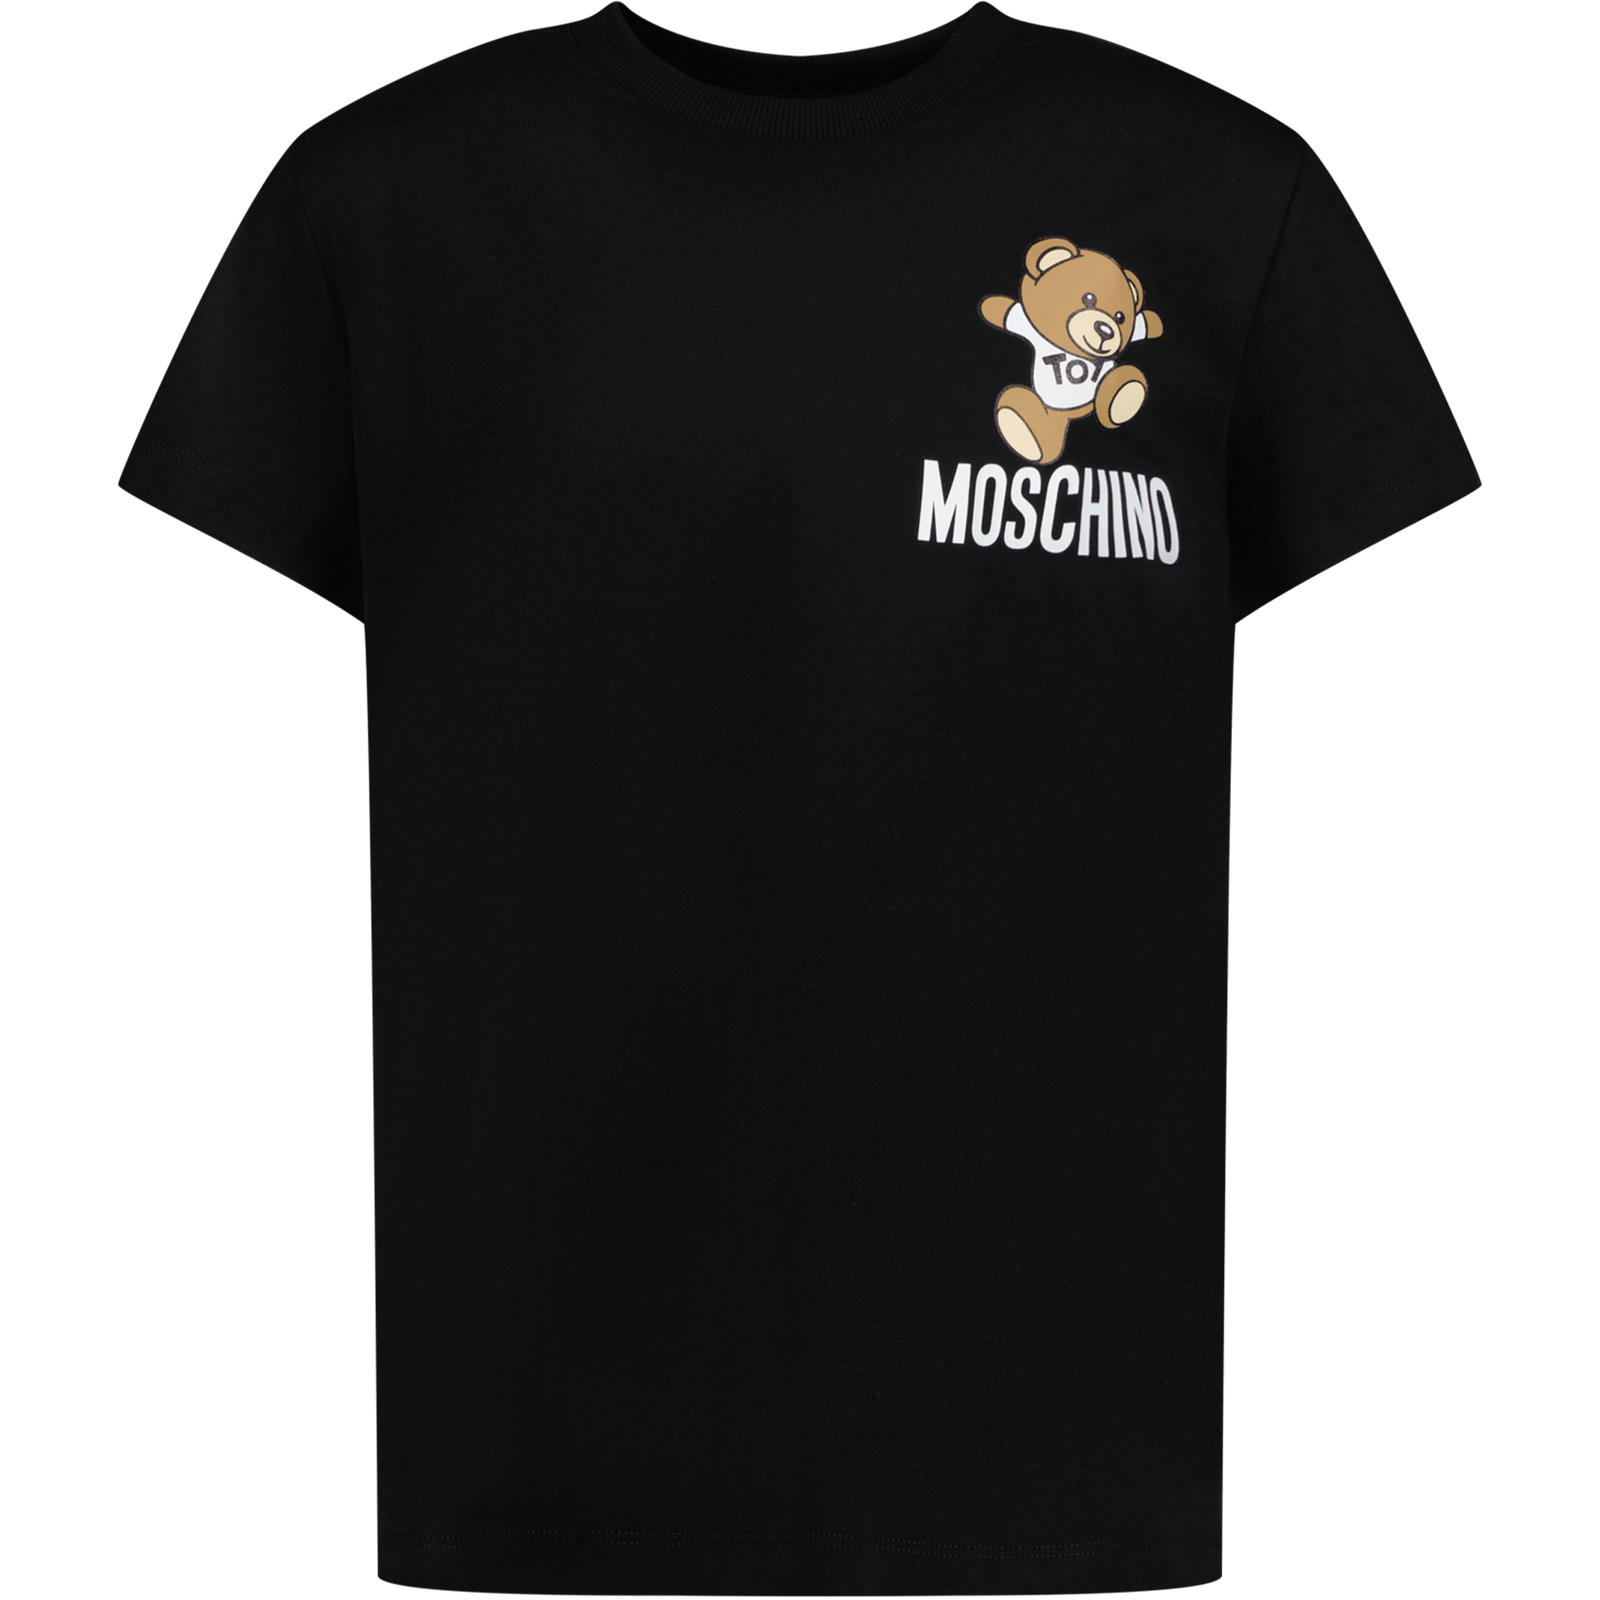 Moschino Kinder Unisex T-Shirt Zwart 4Y